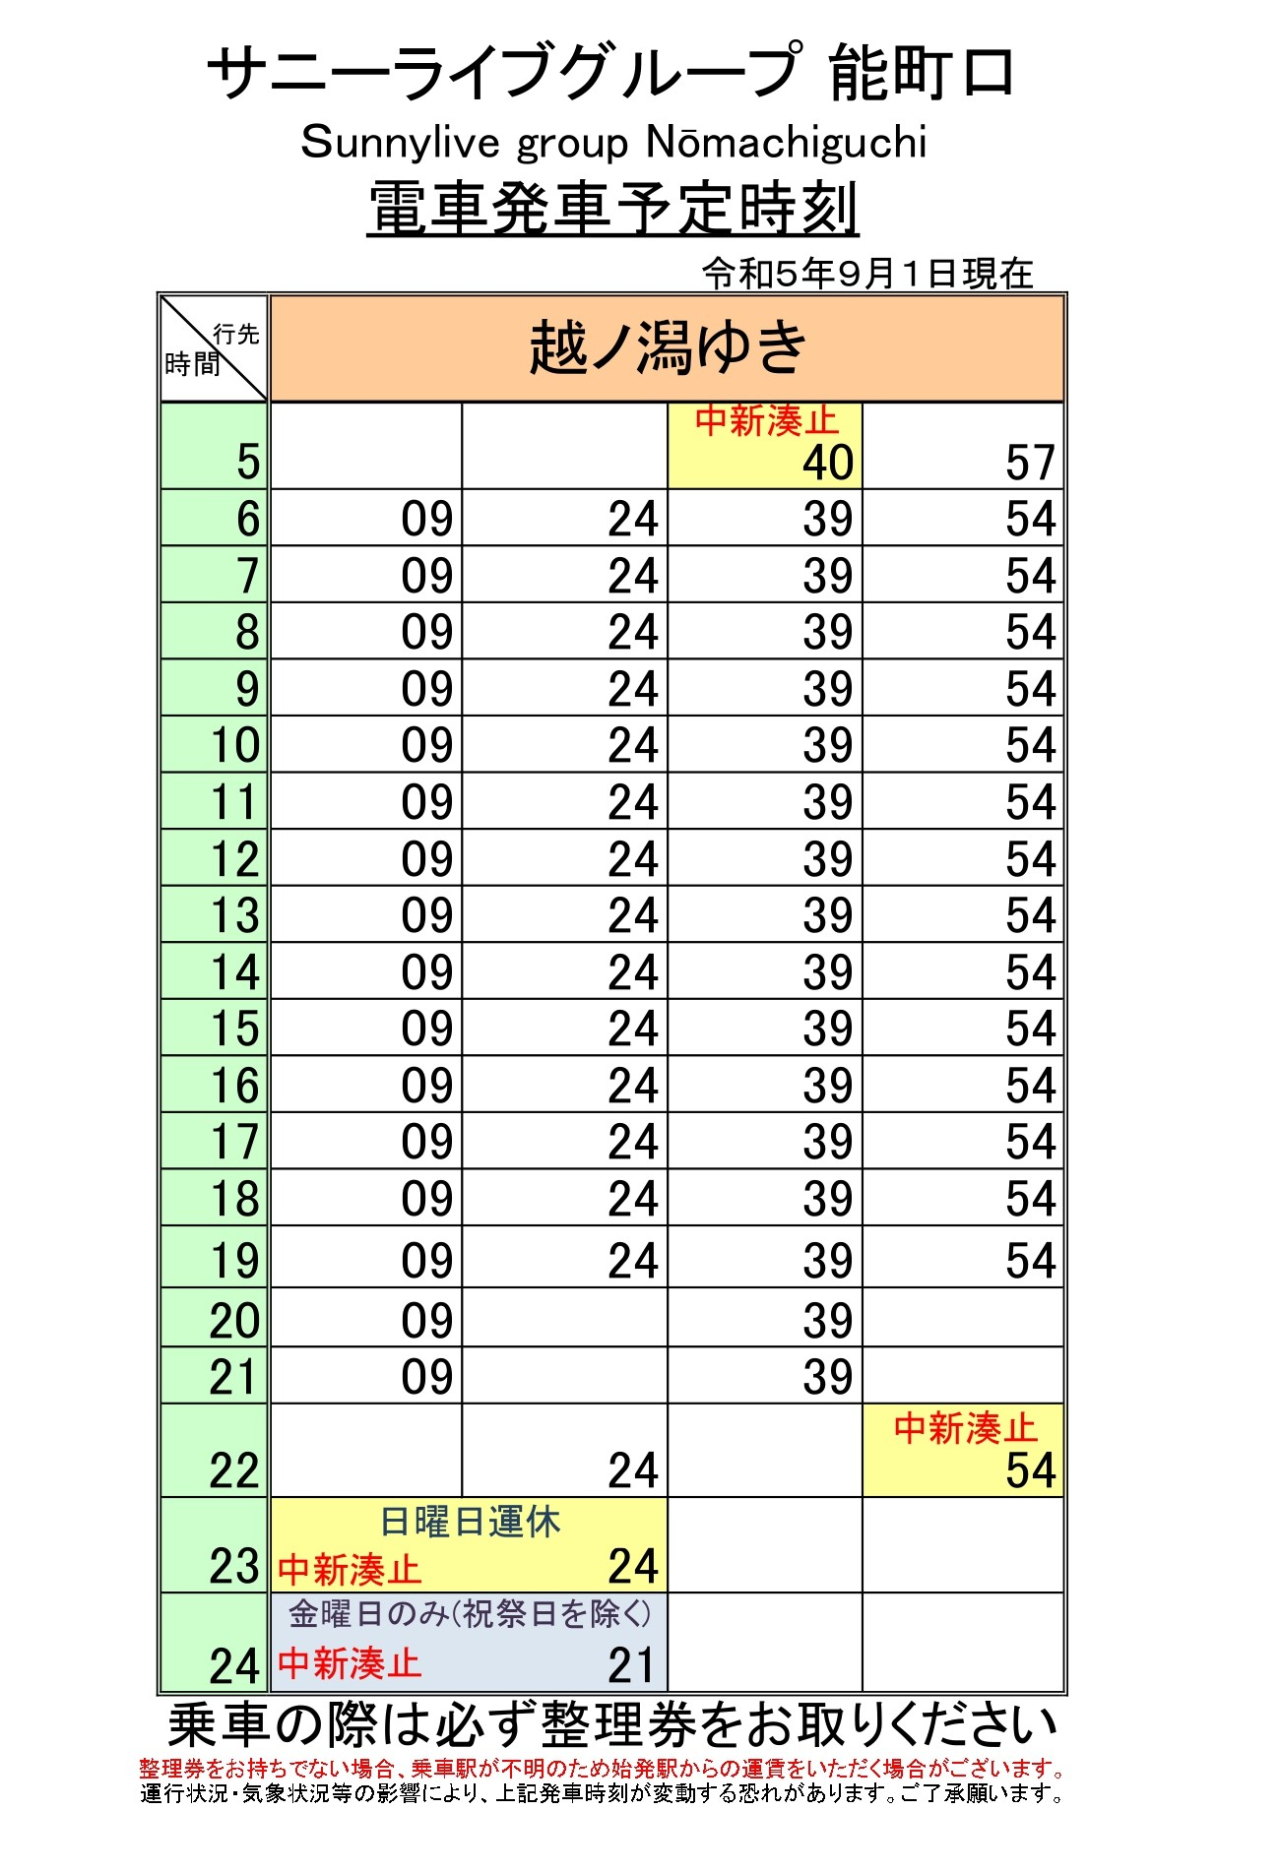 最新5.5.1改正各駅時刻表(能町口下)_